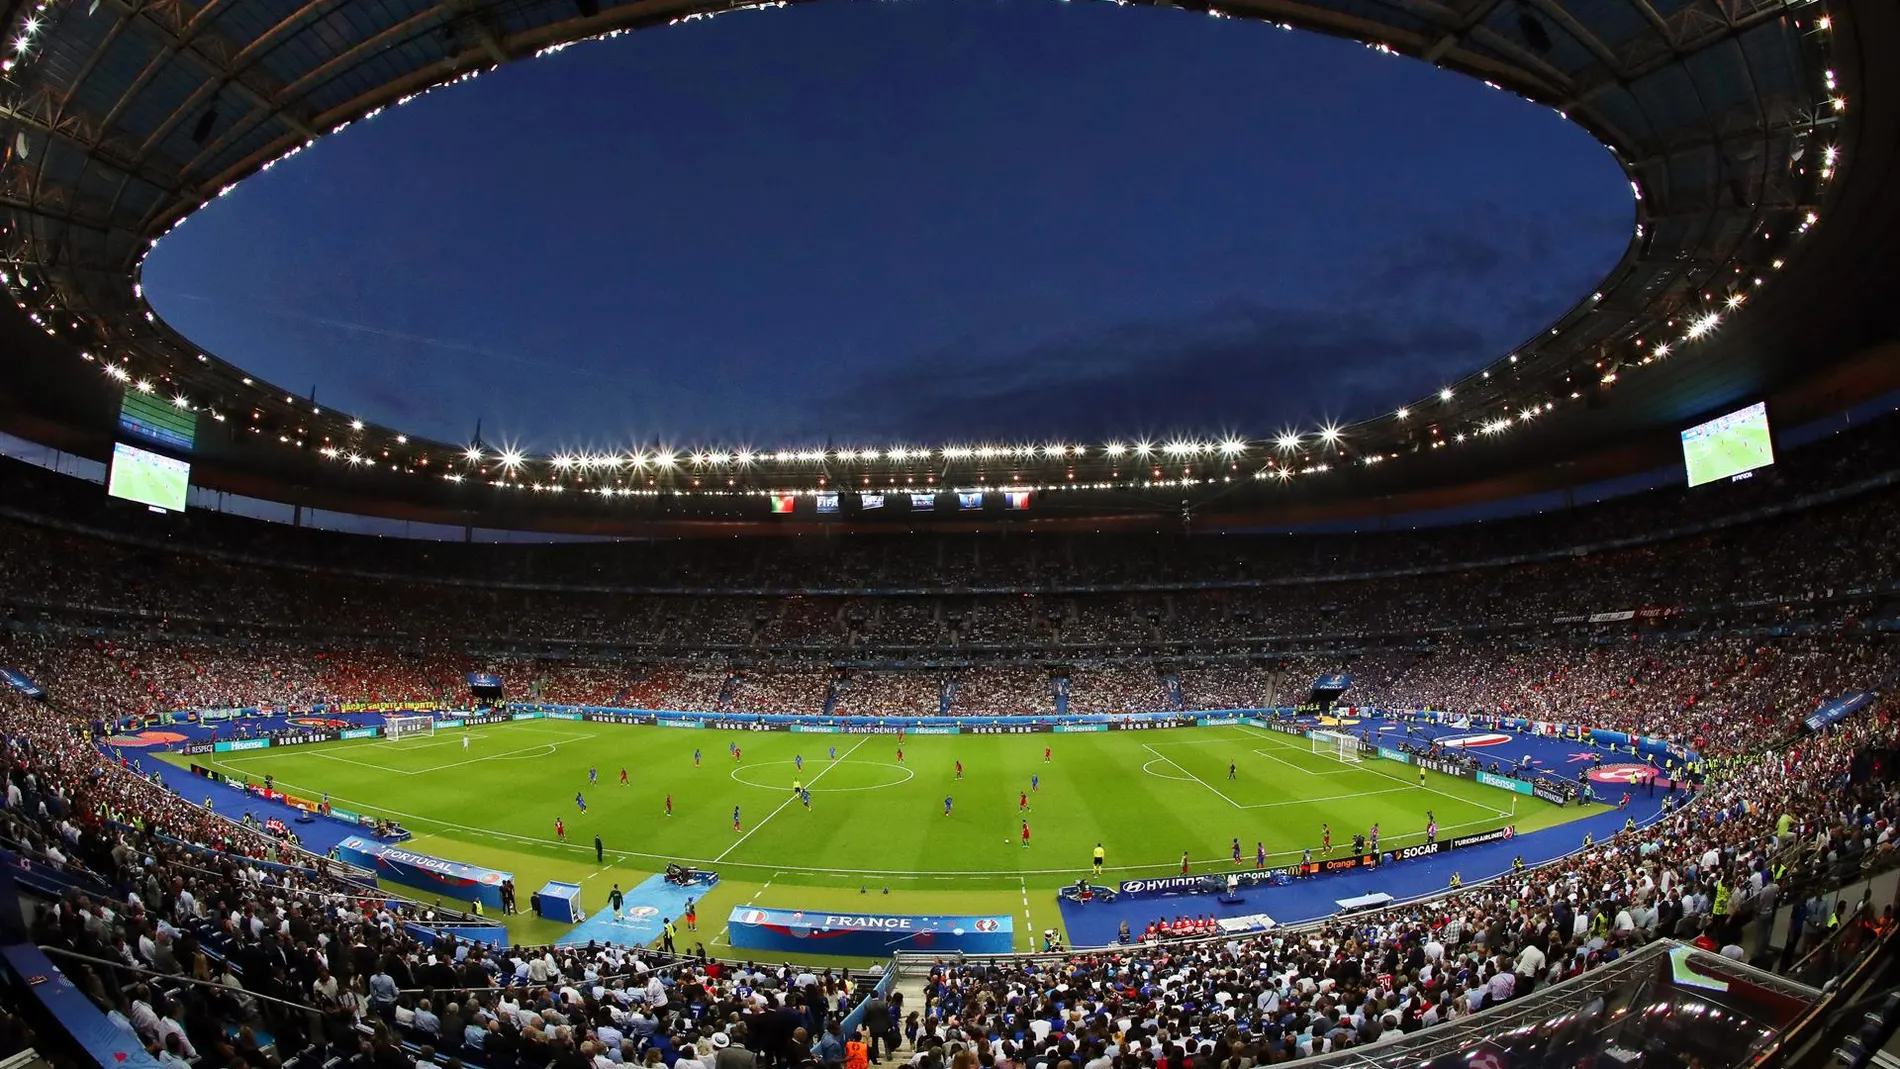 Vista general del Stade de France